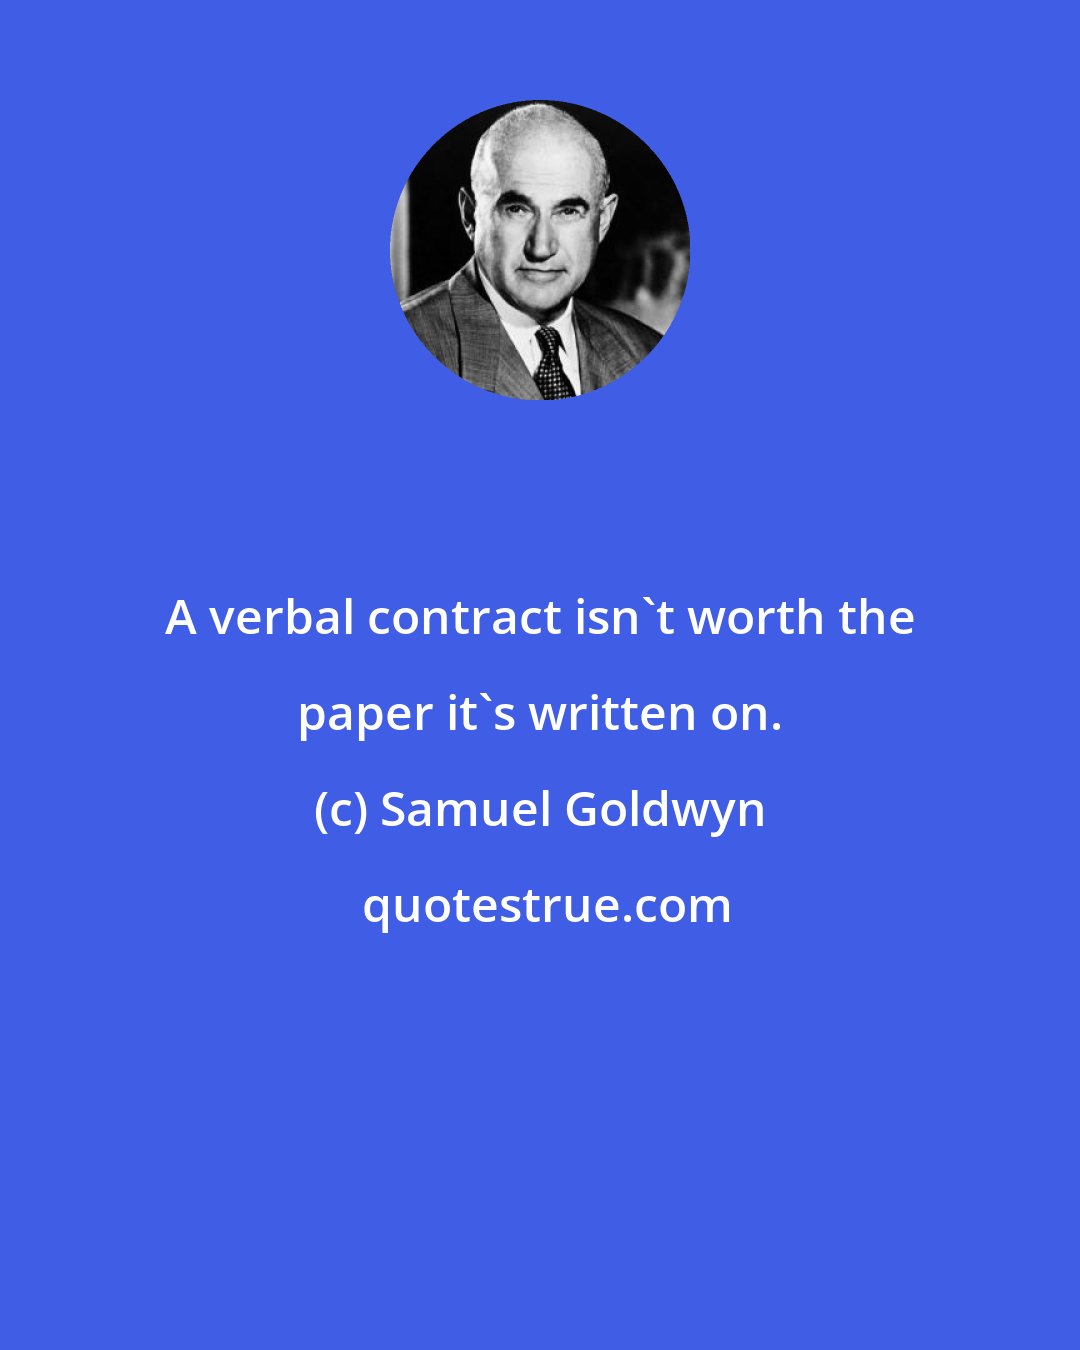 Samuel Goldwyn: A verbal contract isn't worth the paper it's written on.